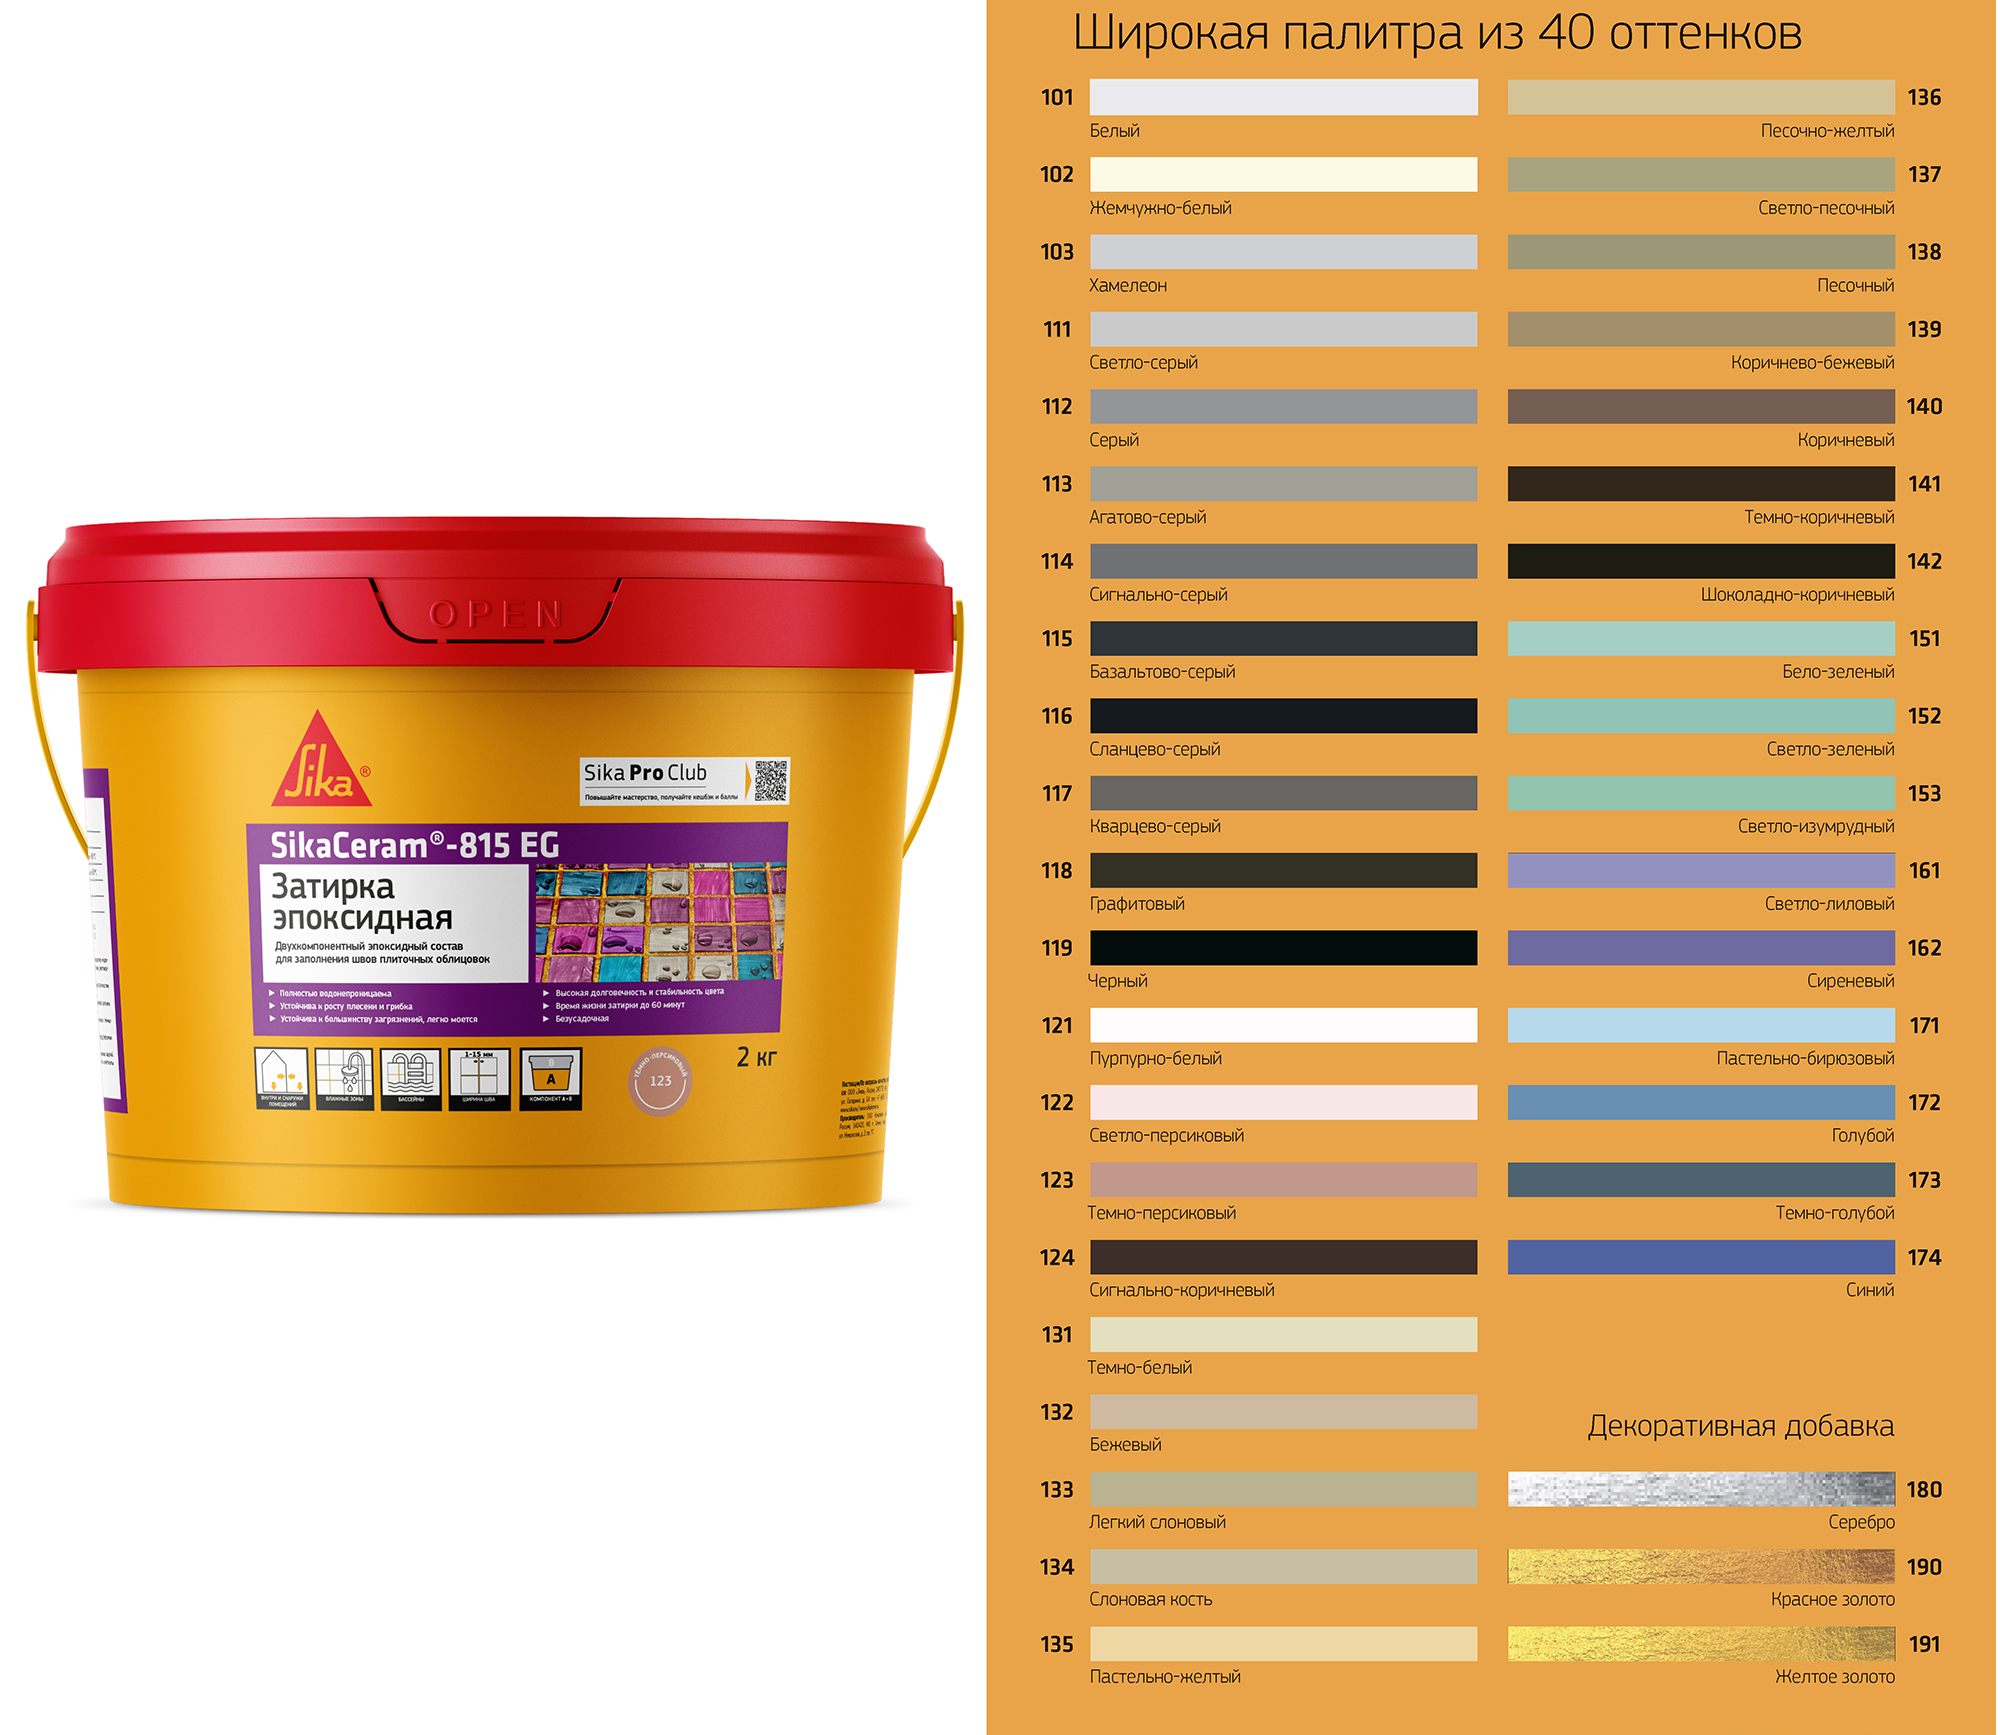 Затирка для плитки SikaCeram - 815 EG двухкомпонентная эпоксидная, цвет пастел-желт (135)